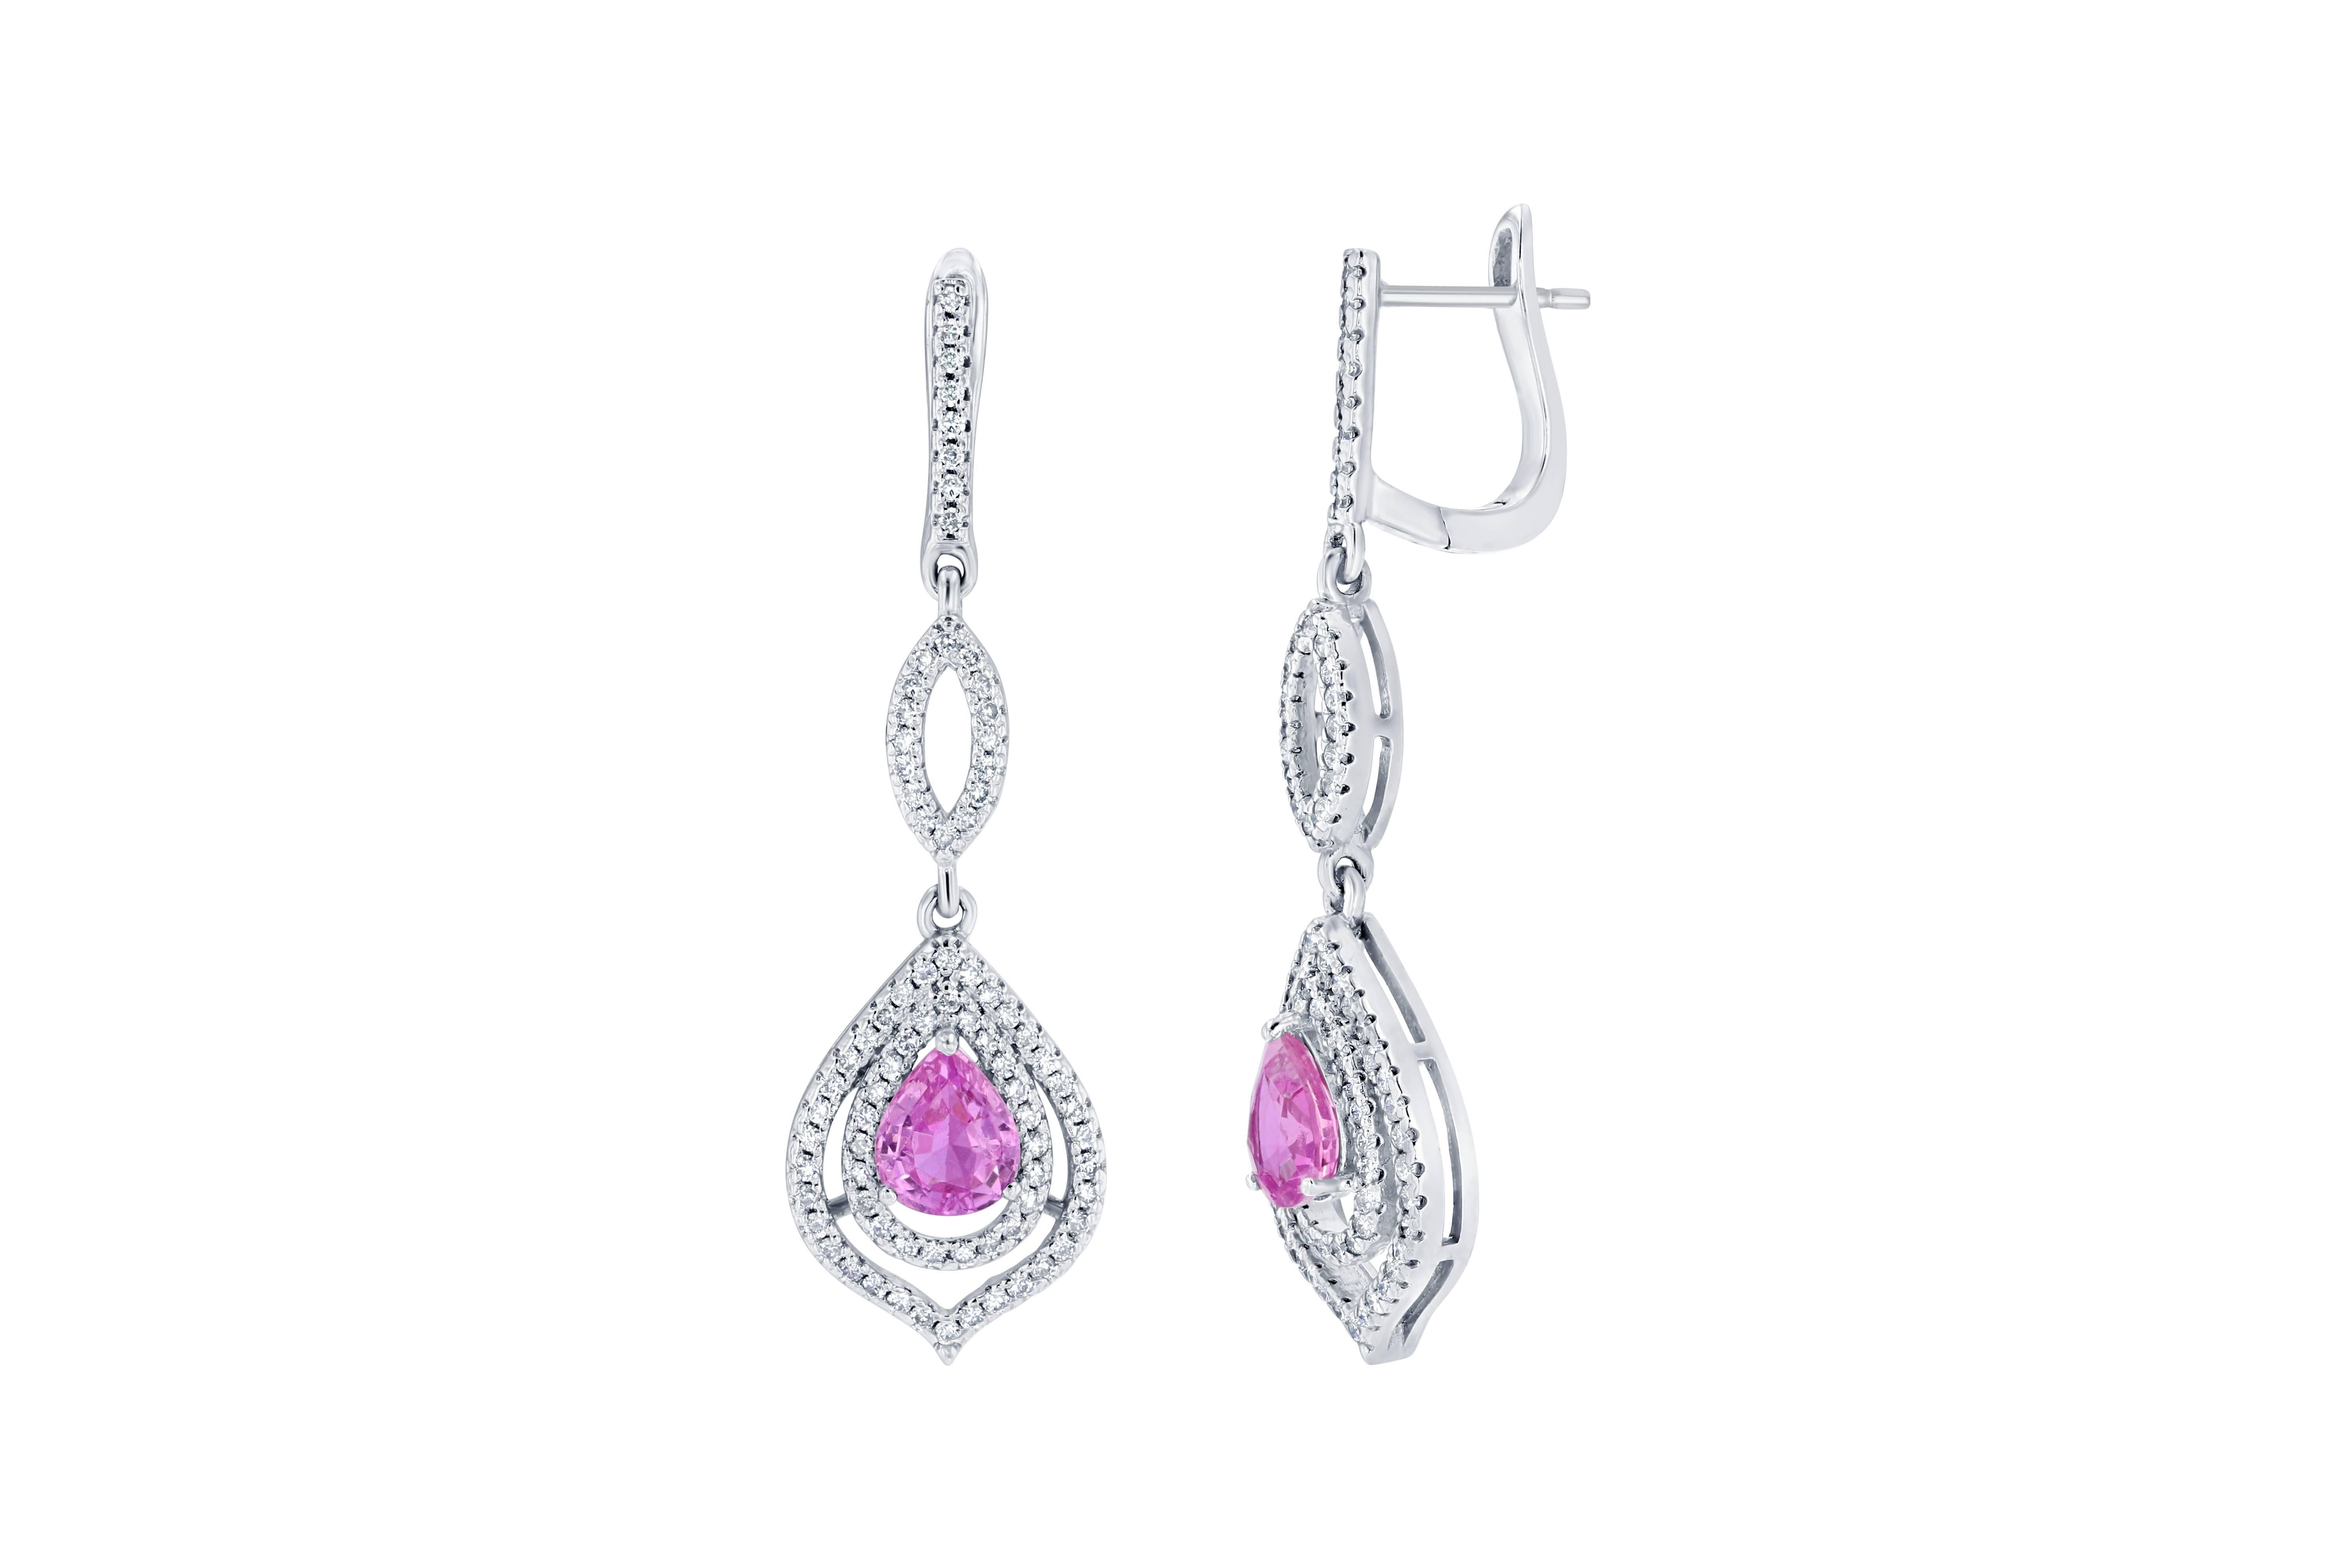 Es gibt 2 rosa Saphire im Birnenschliff, die 2,05 Karat wiegen und von 164 Diamanten im Rundschliff umgeben sind, die 0,85 Karat wiegen.  Die Ohrringe sind aus 14 Karat Weißgold gefertigt und wiegen ungefähr 6,7 Gramm.  Die Länge der Ohrringe